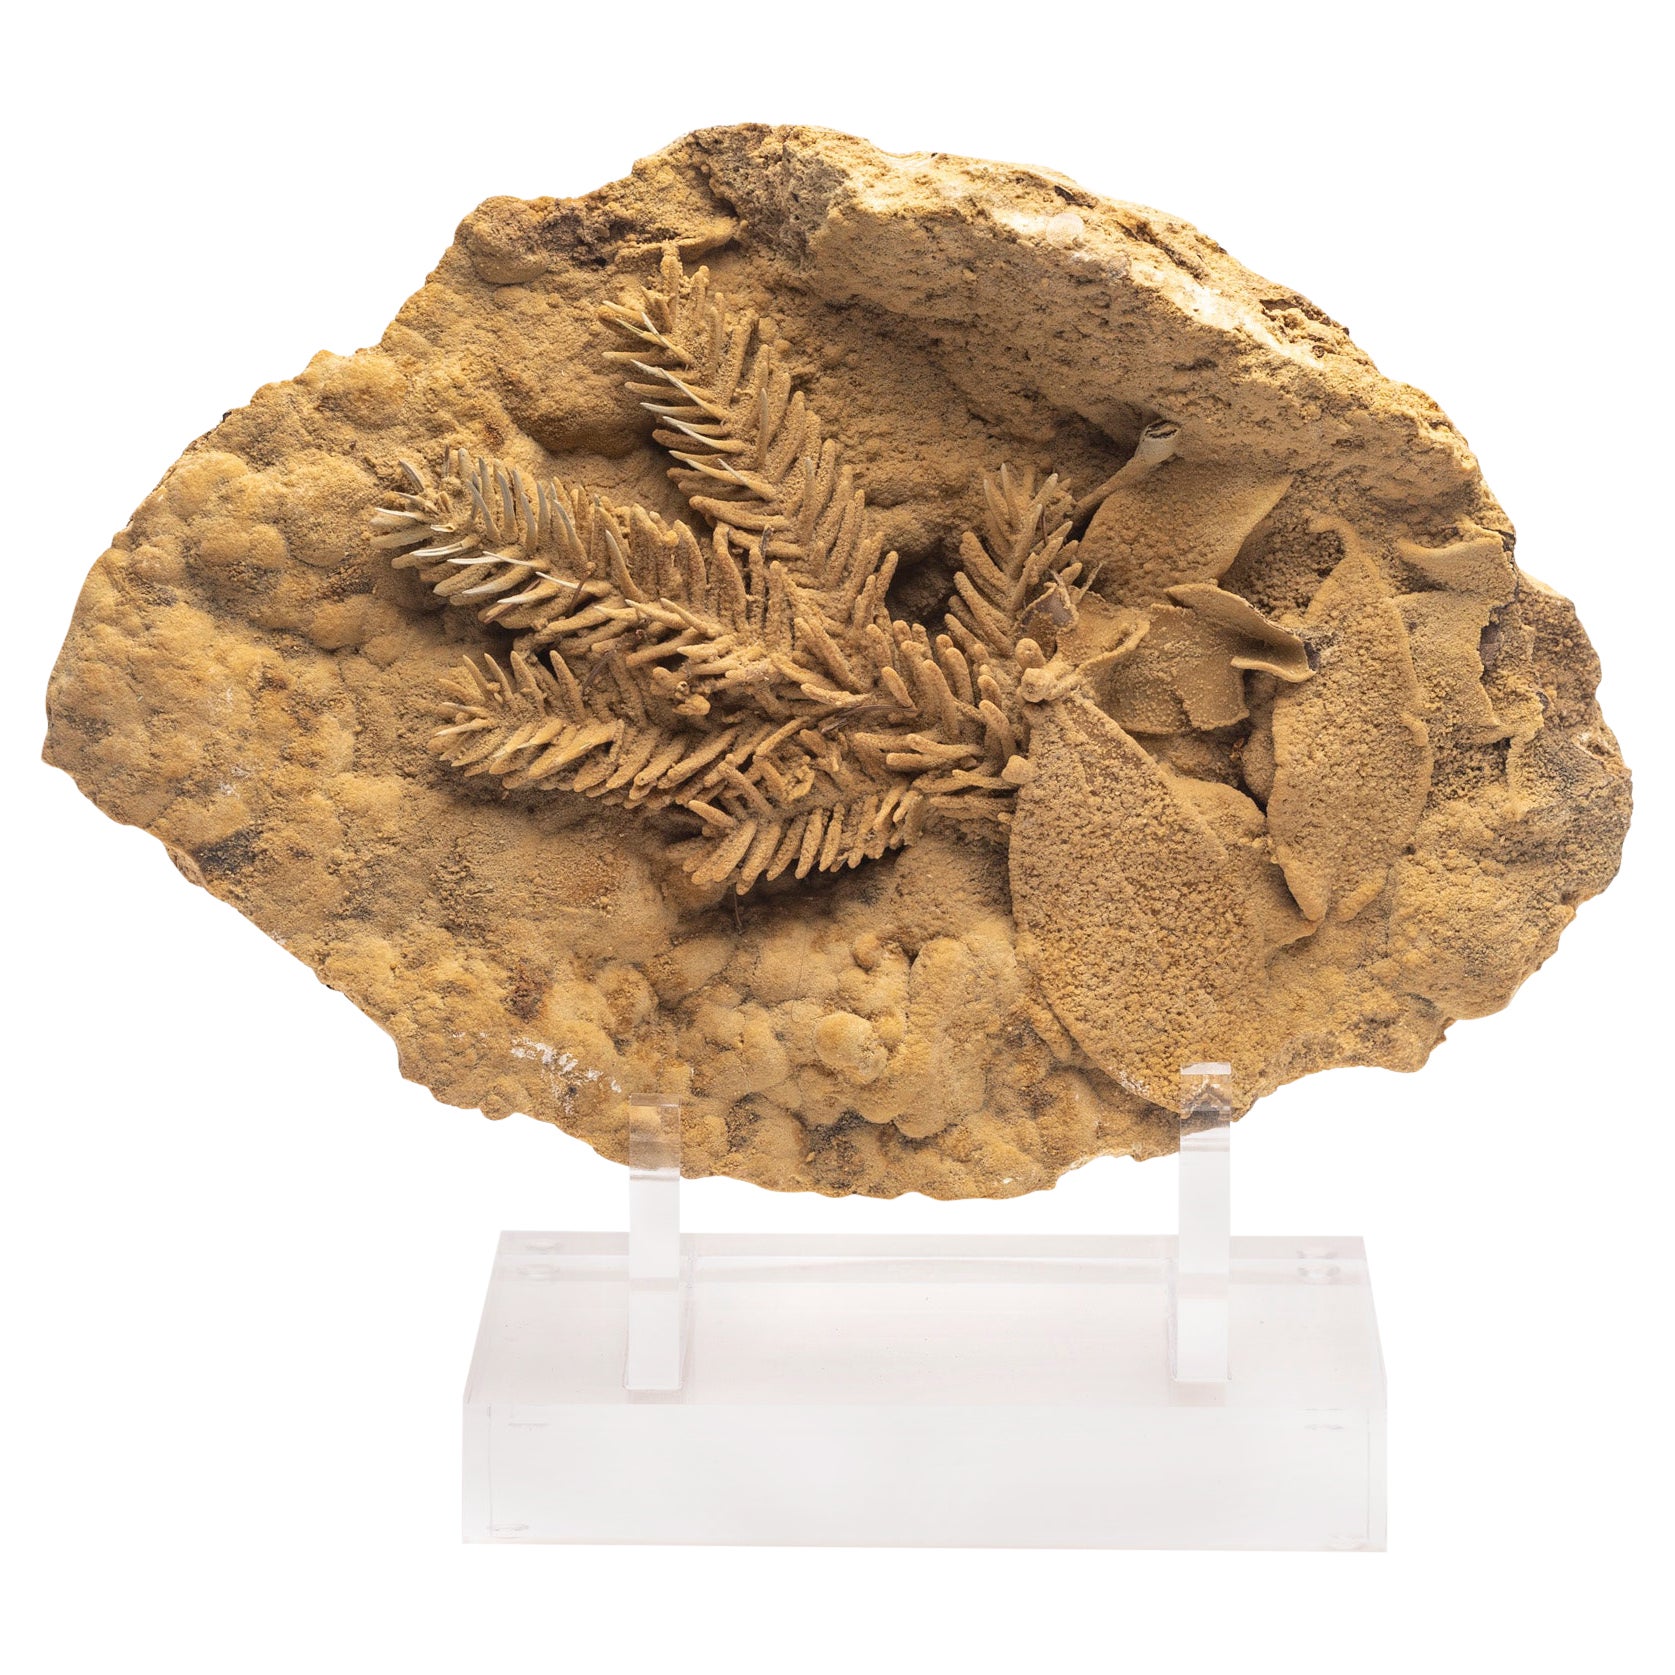 Fossilblatt aus Travertin aus Tyrol, Österreich, Pleistocene-Periode